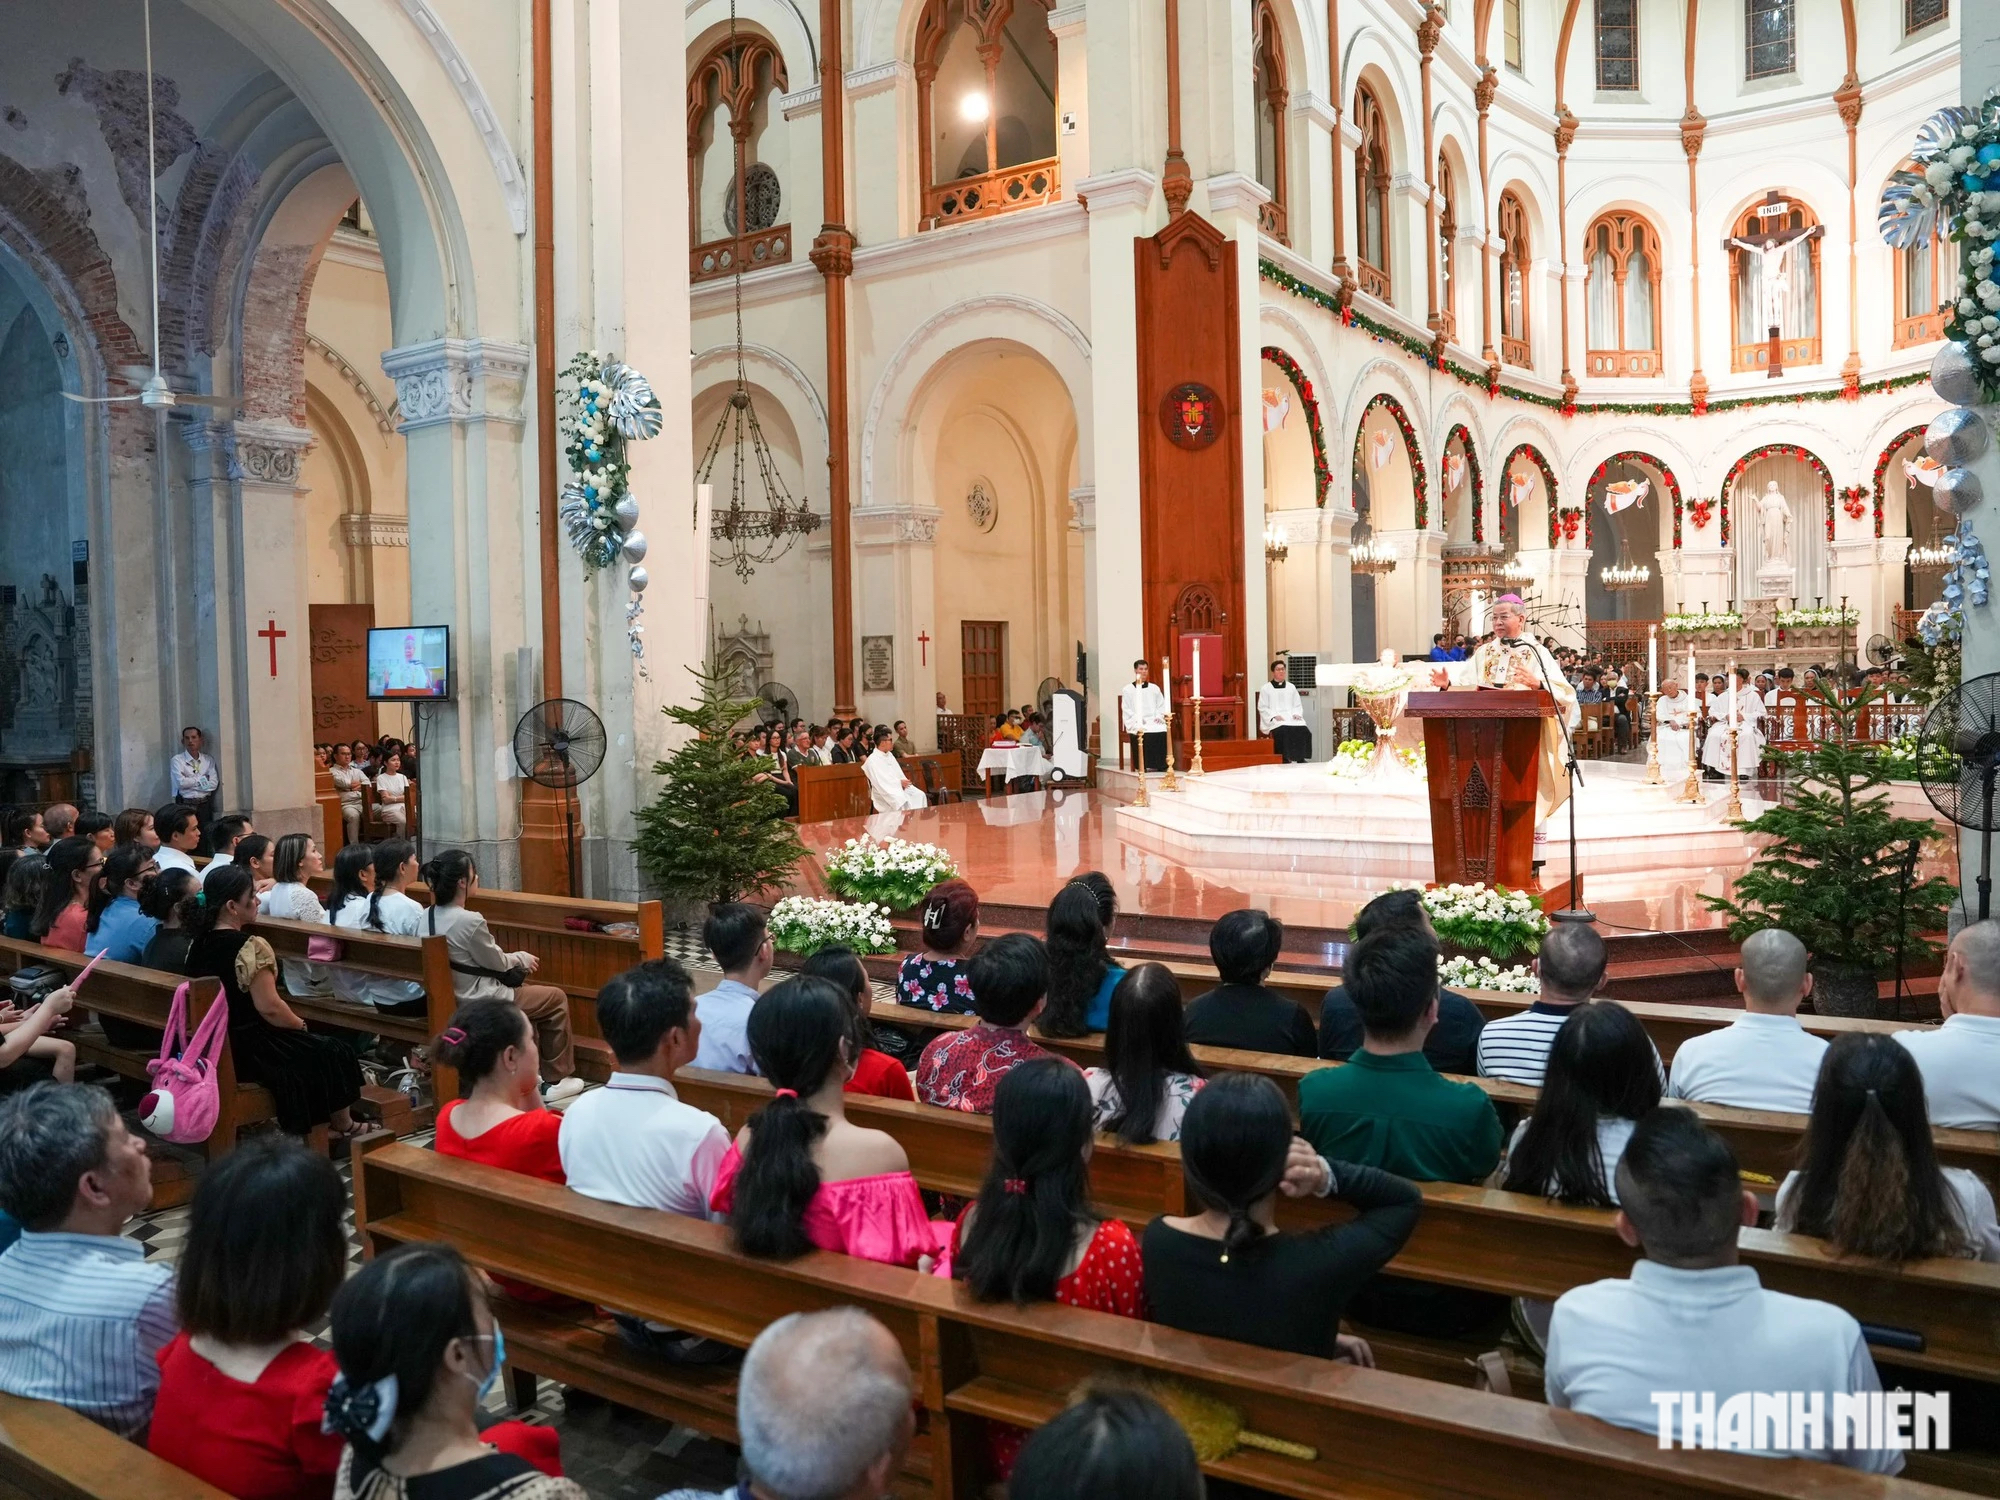 Hơn 1.000 người vào Nhà thờ Đức Bà Sài Gòn làm thánh lễ mừng Chúa Giáng sinh- Ảnh 6.